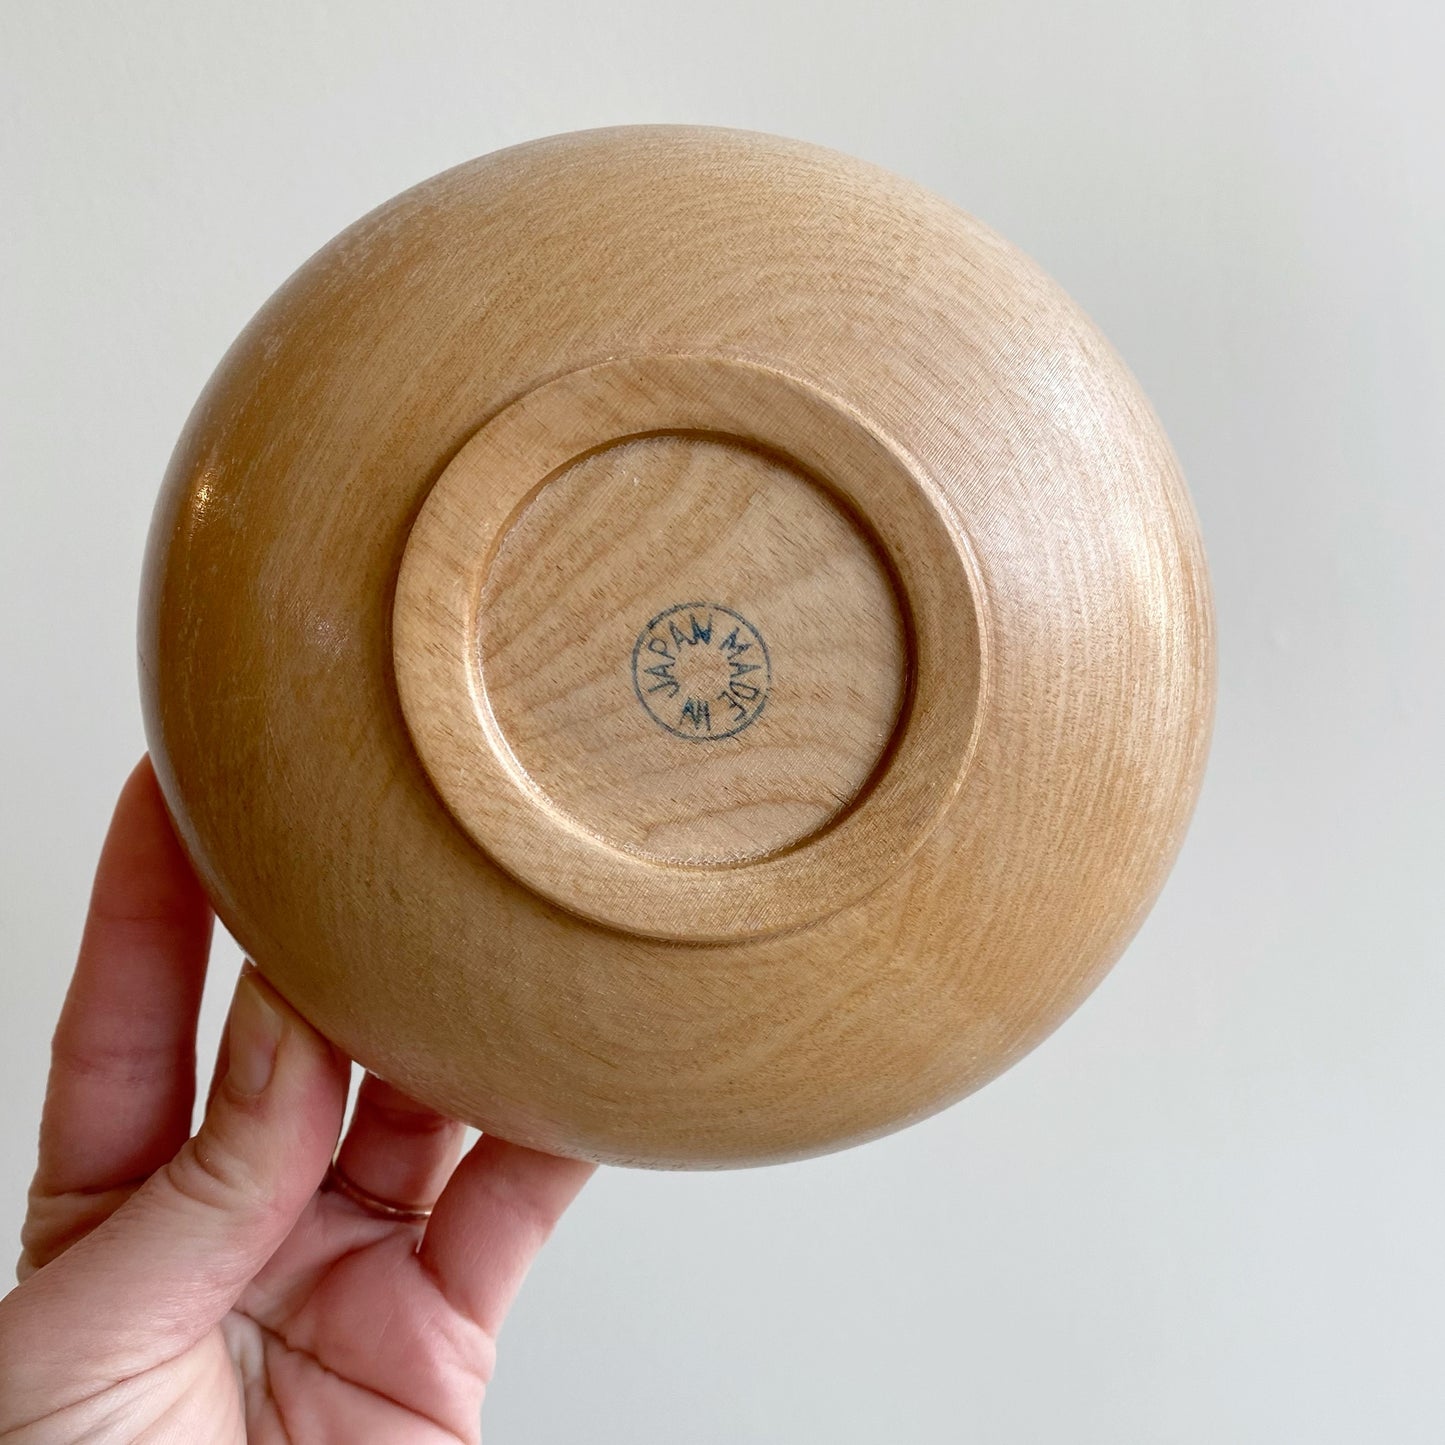 Simple Single Wood Bowl, Japan